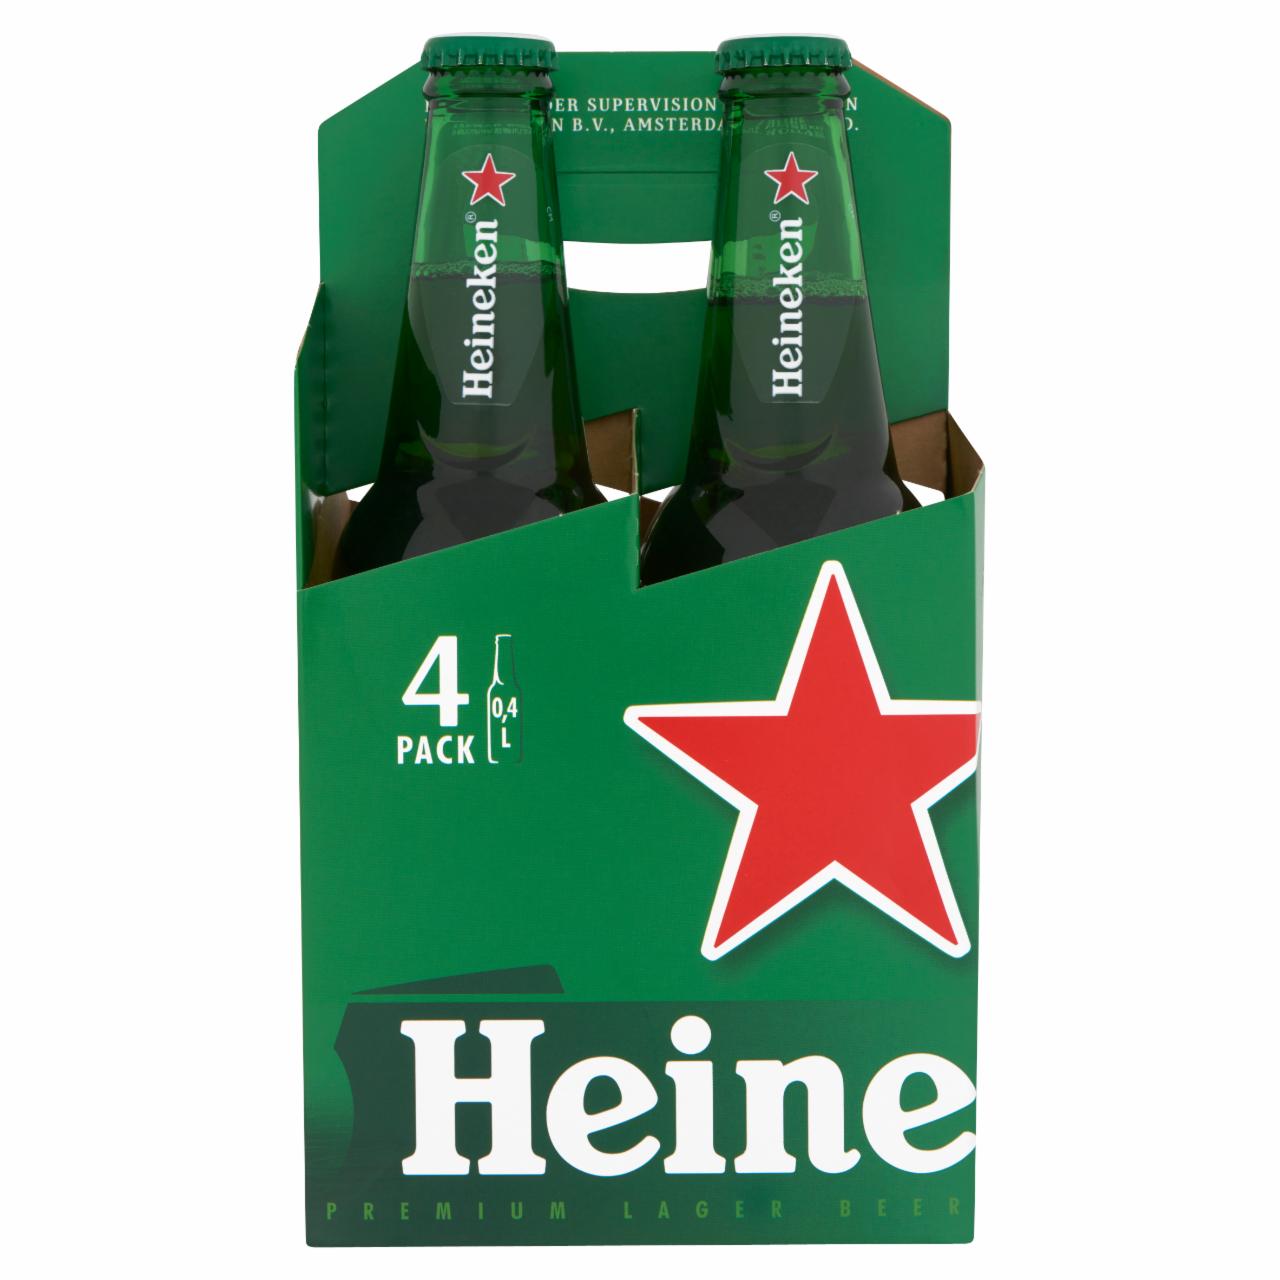 Képek - Heineken minőségi világos sör 5% 4 x 0,4 l üveg